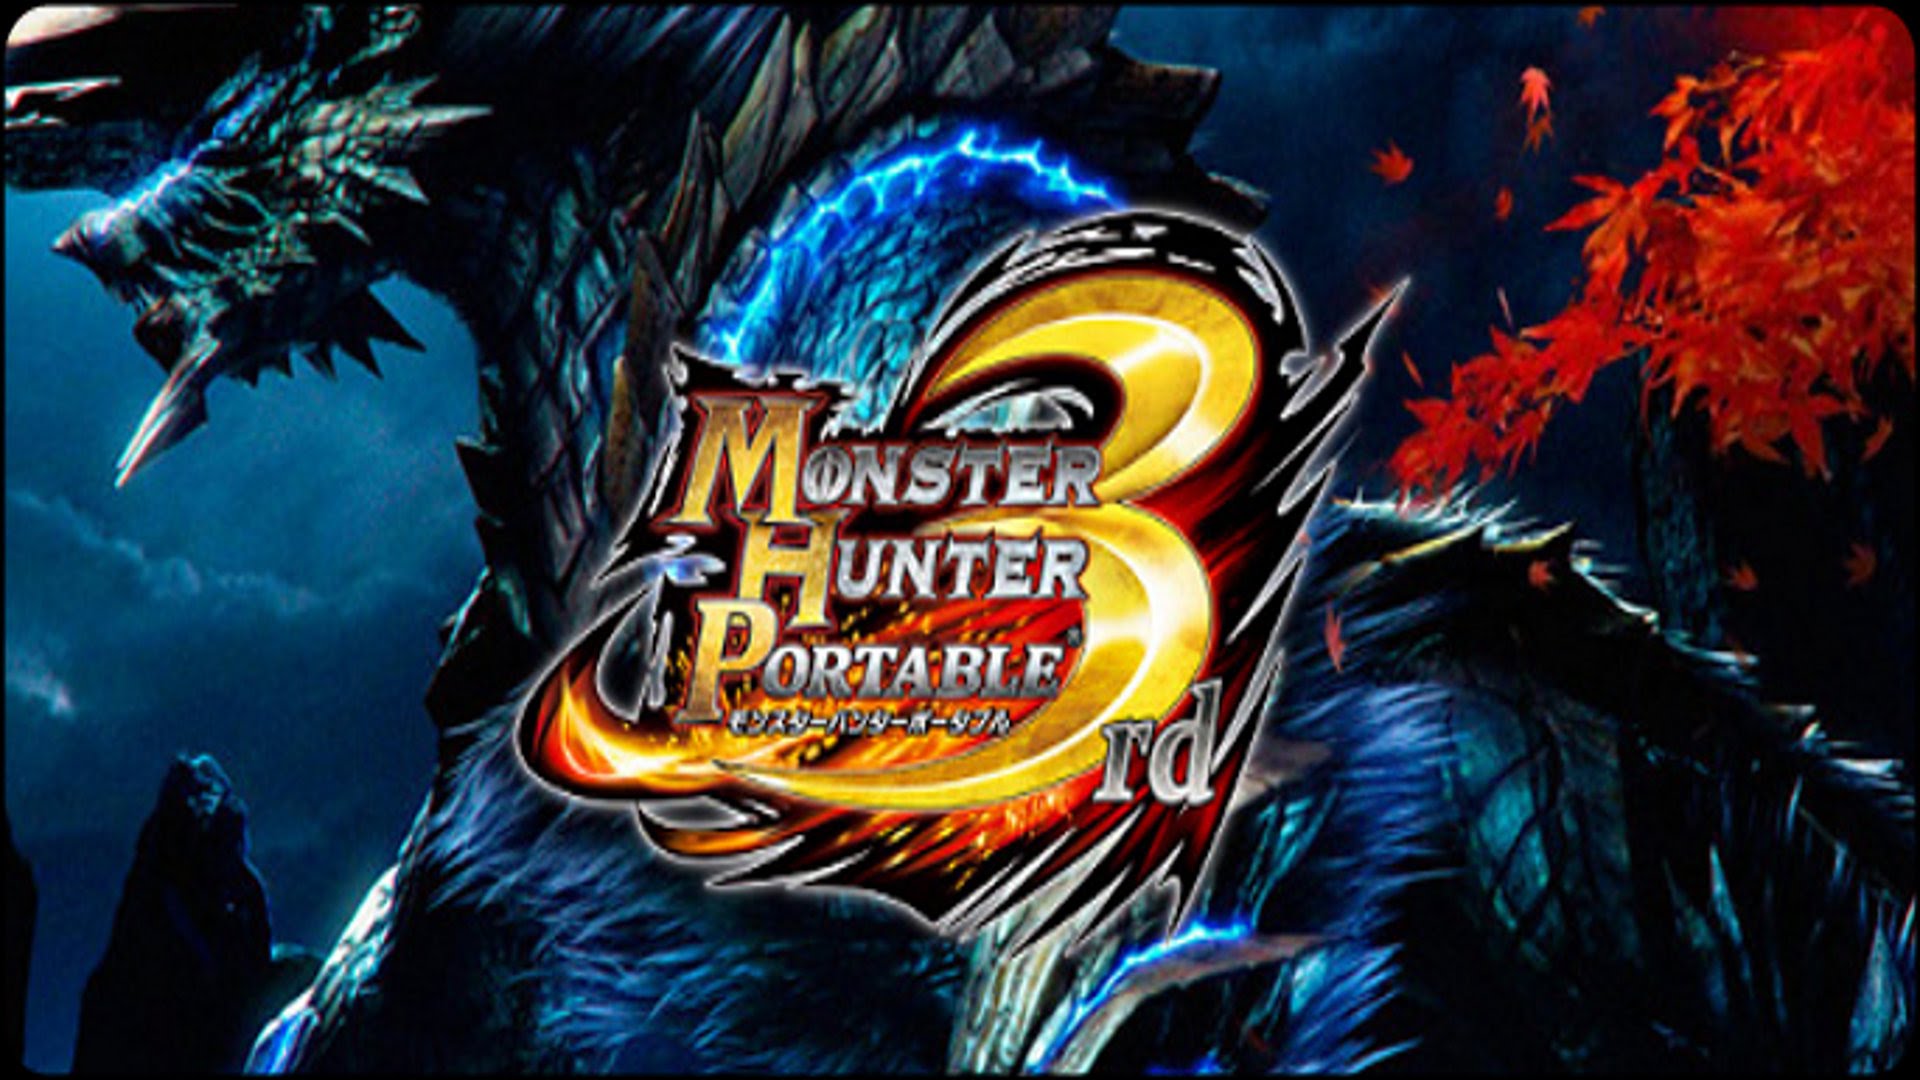 Monster Hunter Portable 3rd HD wallpapers, Desktop wallpaper - most viewed